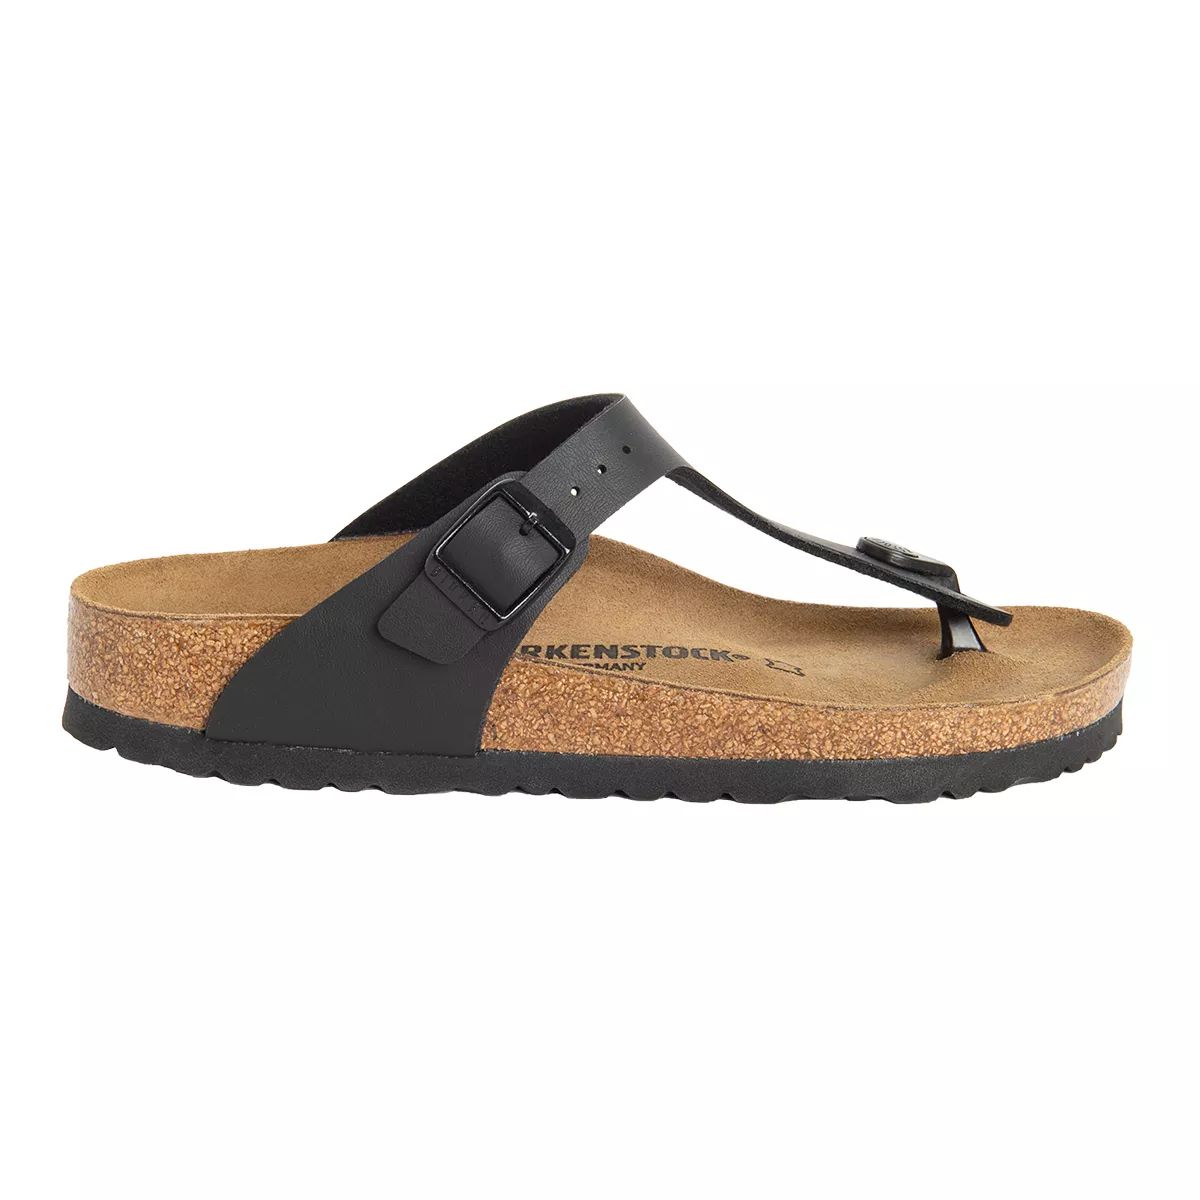 Birkenstock Women's Birko-Flor Multi Strap Slides/Sandals Regular Fit Comfortable